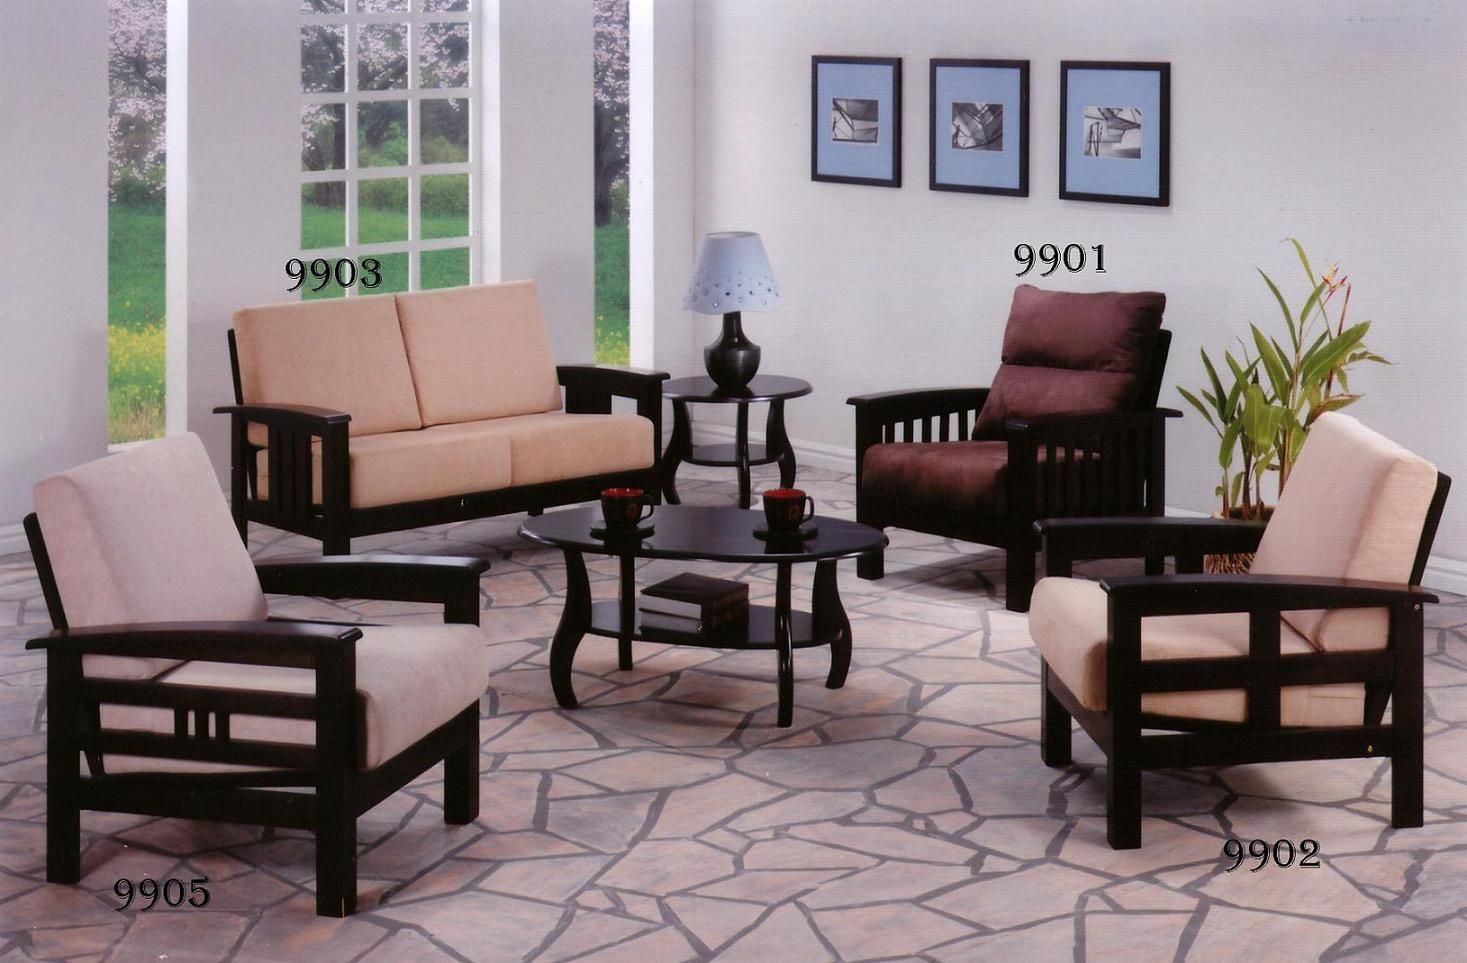 Sofa Set Designs For Living Room India - sofuto.co - Sofa Set Design For Living Room In India